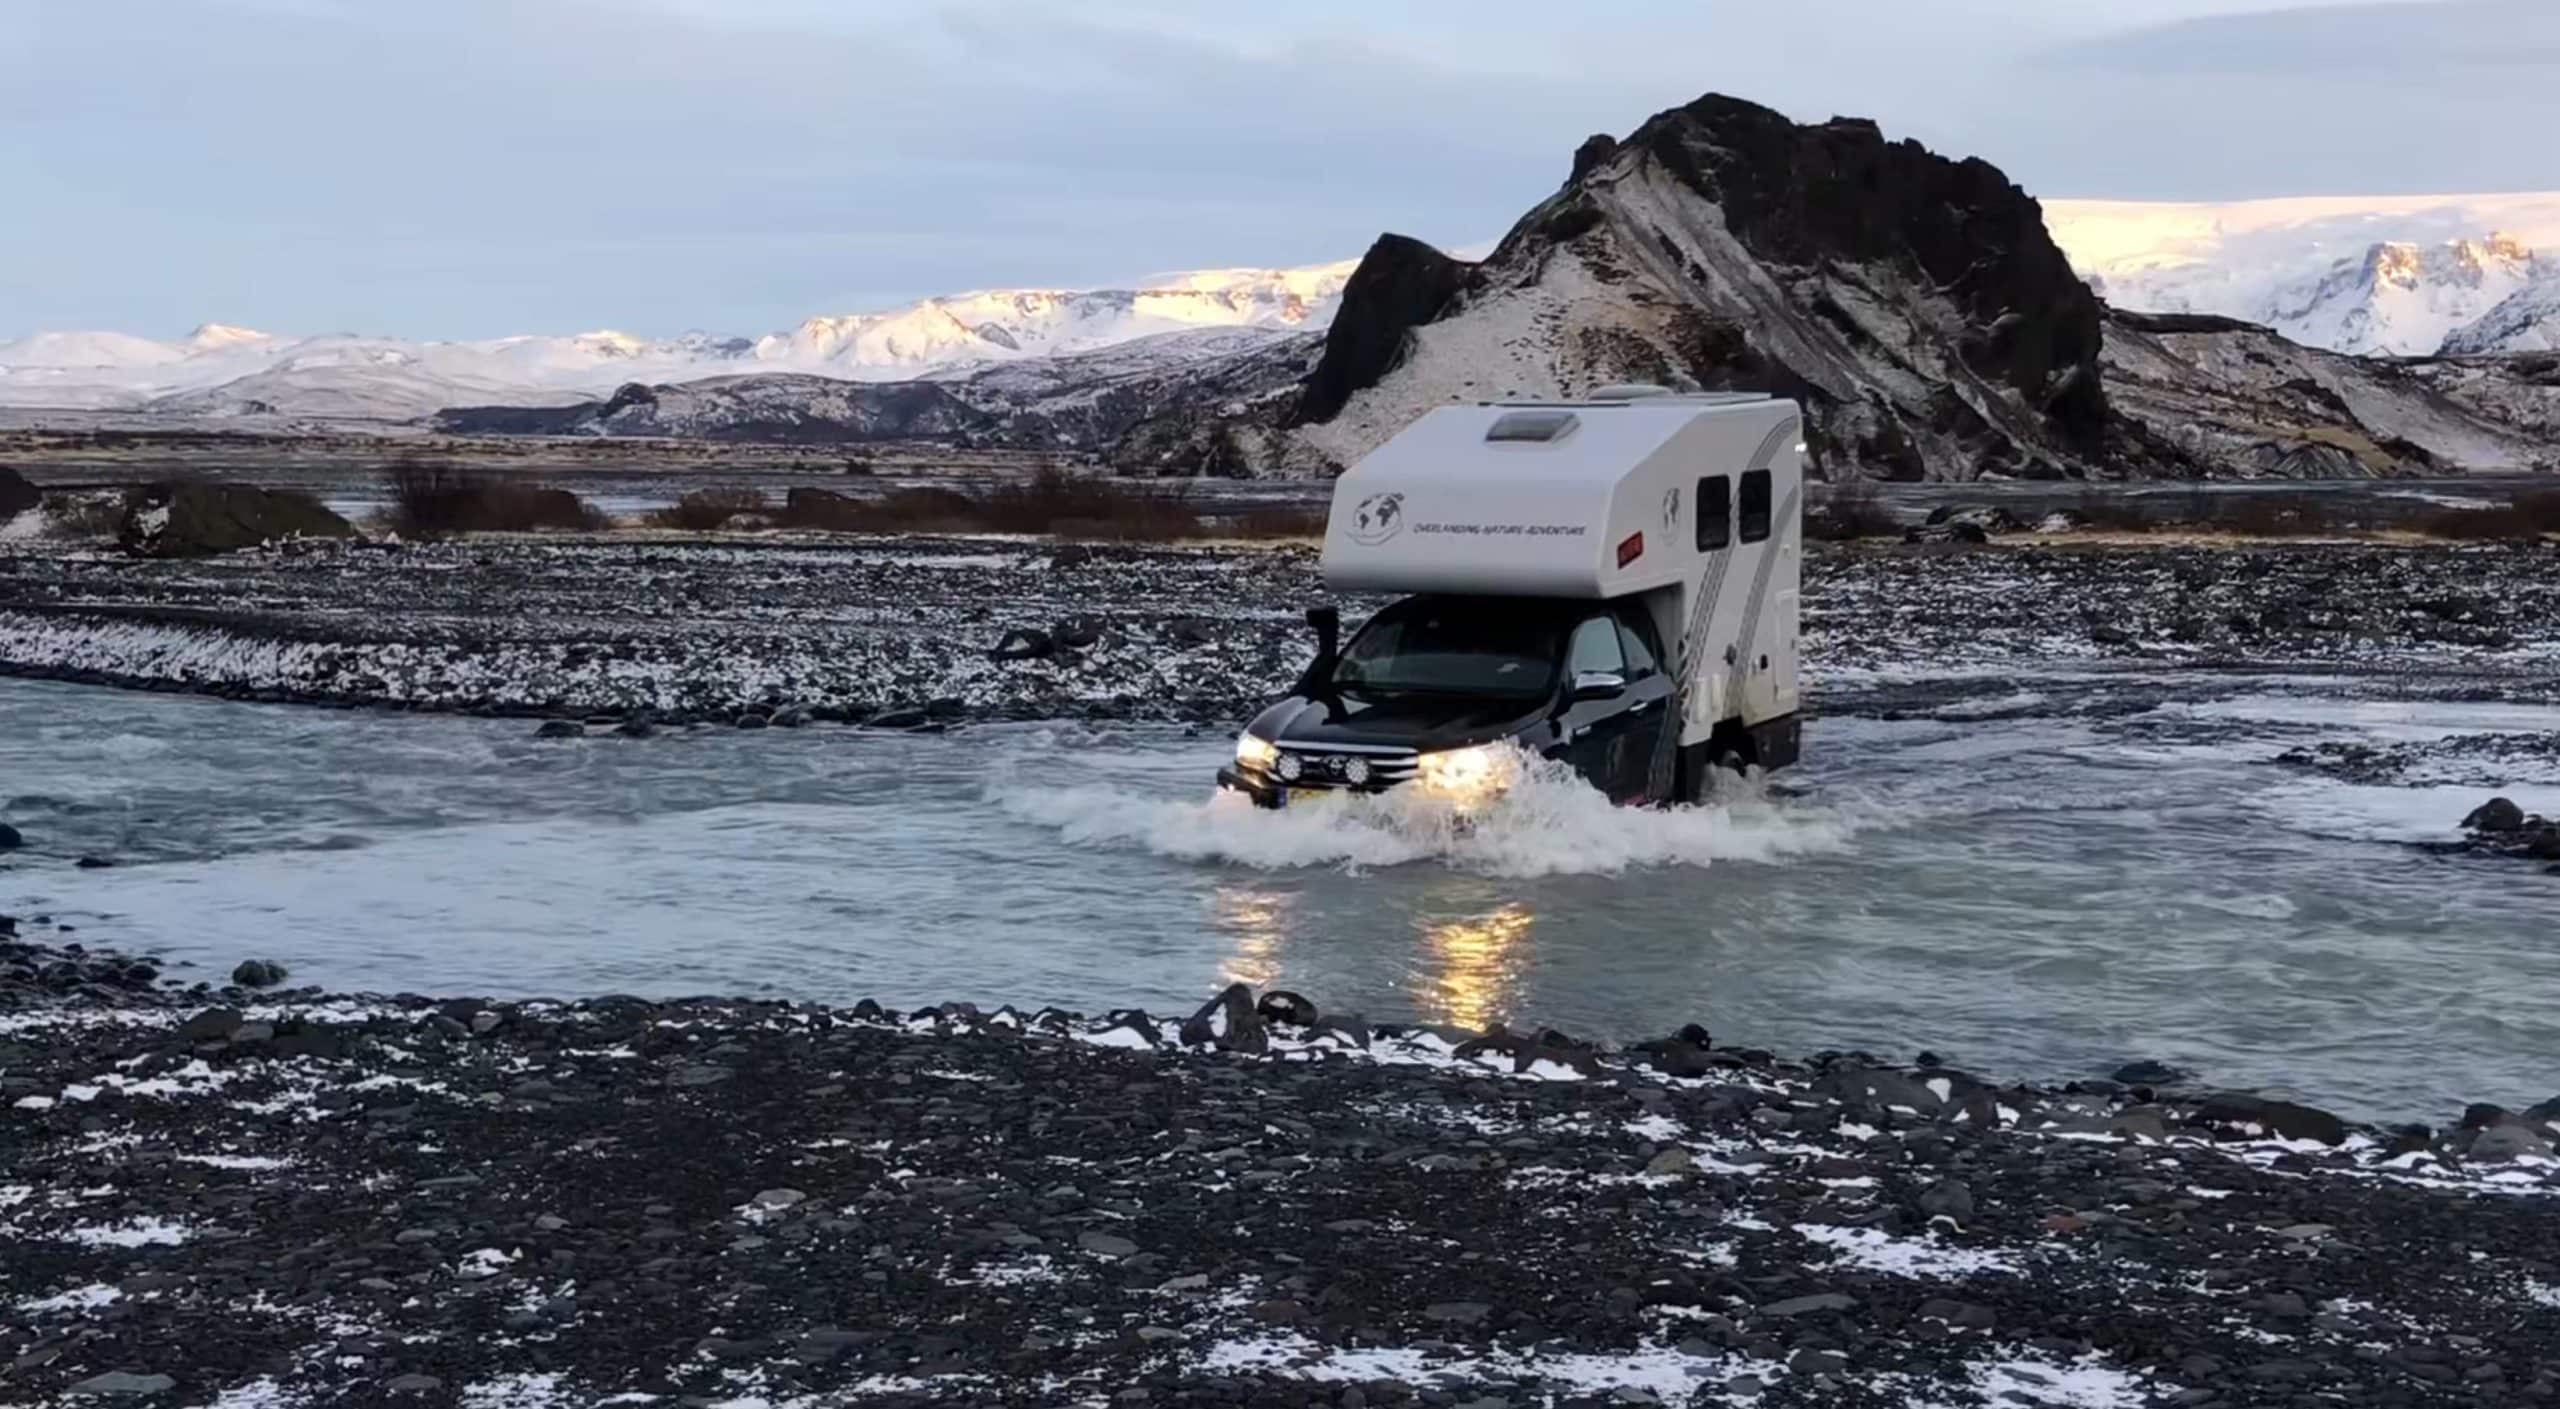 rivier oversteken met 4x4 camper roadtrip ijsland